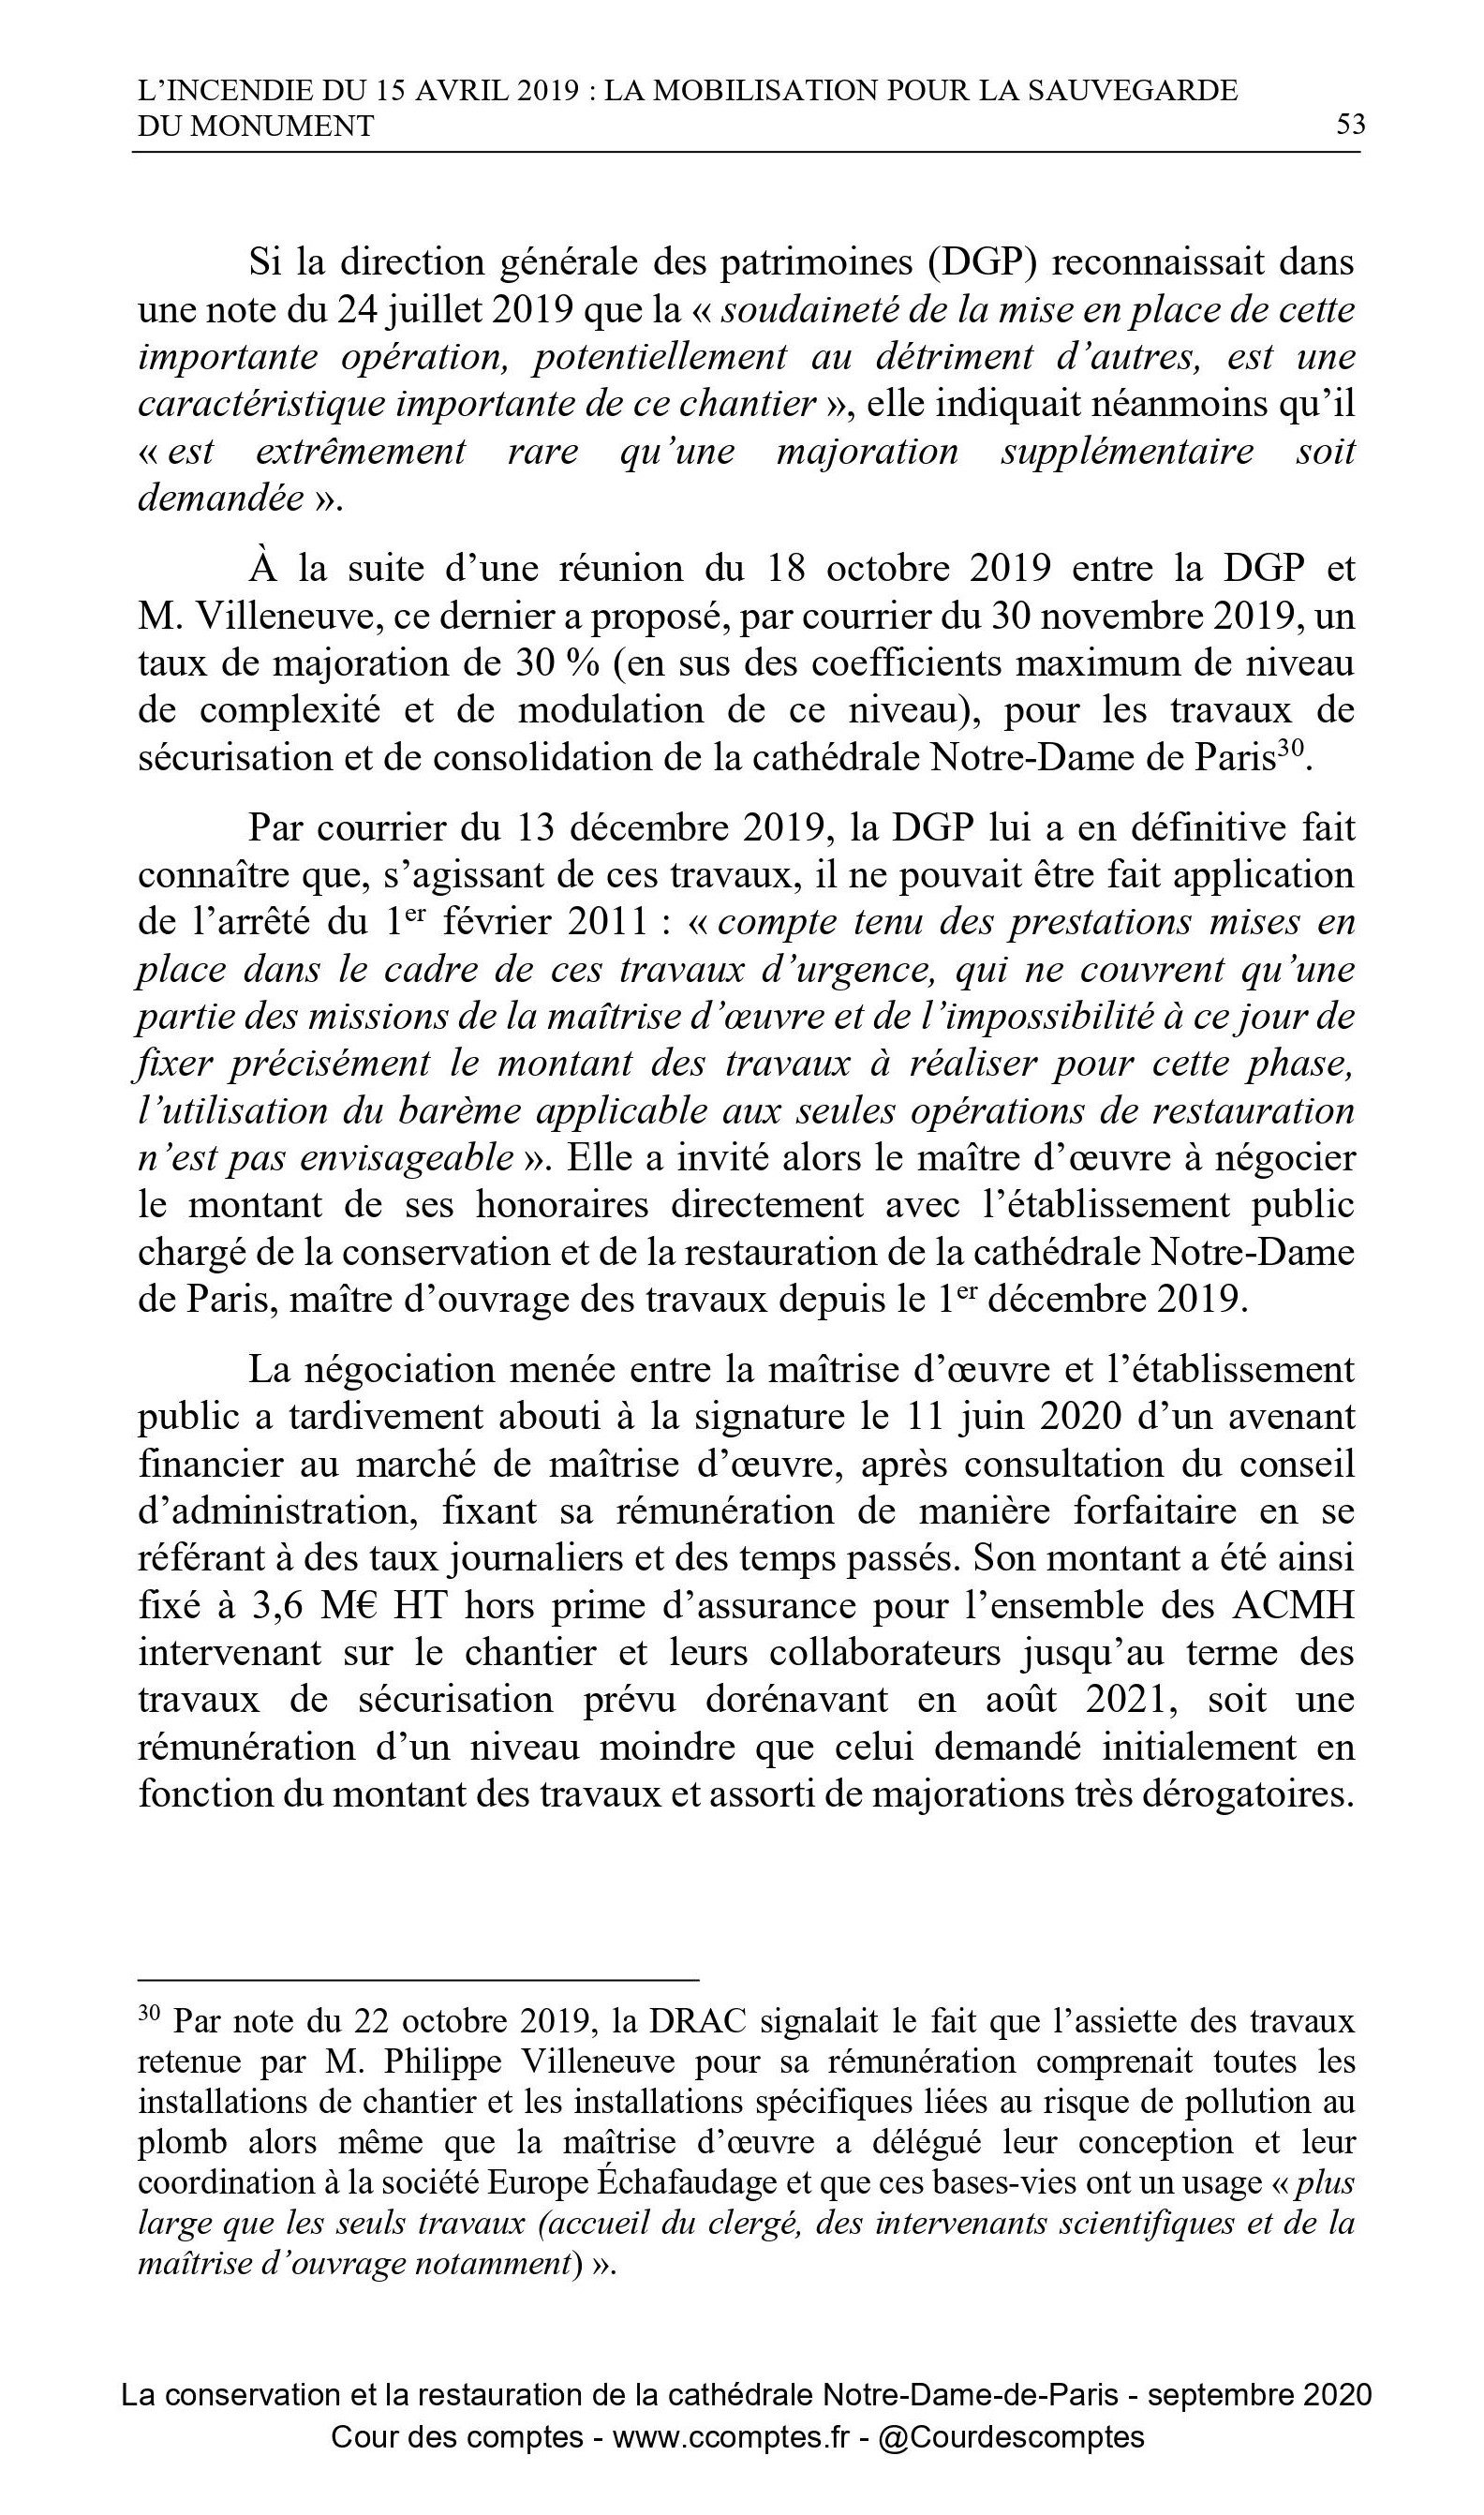 Cour des comptes, Notre-Dame, p. 53